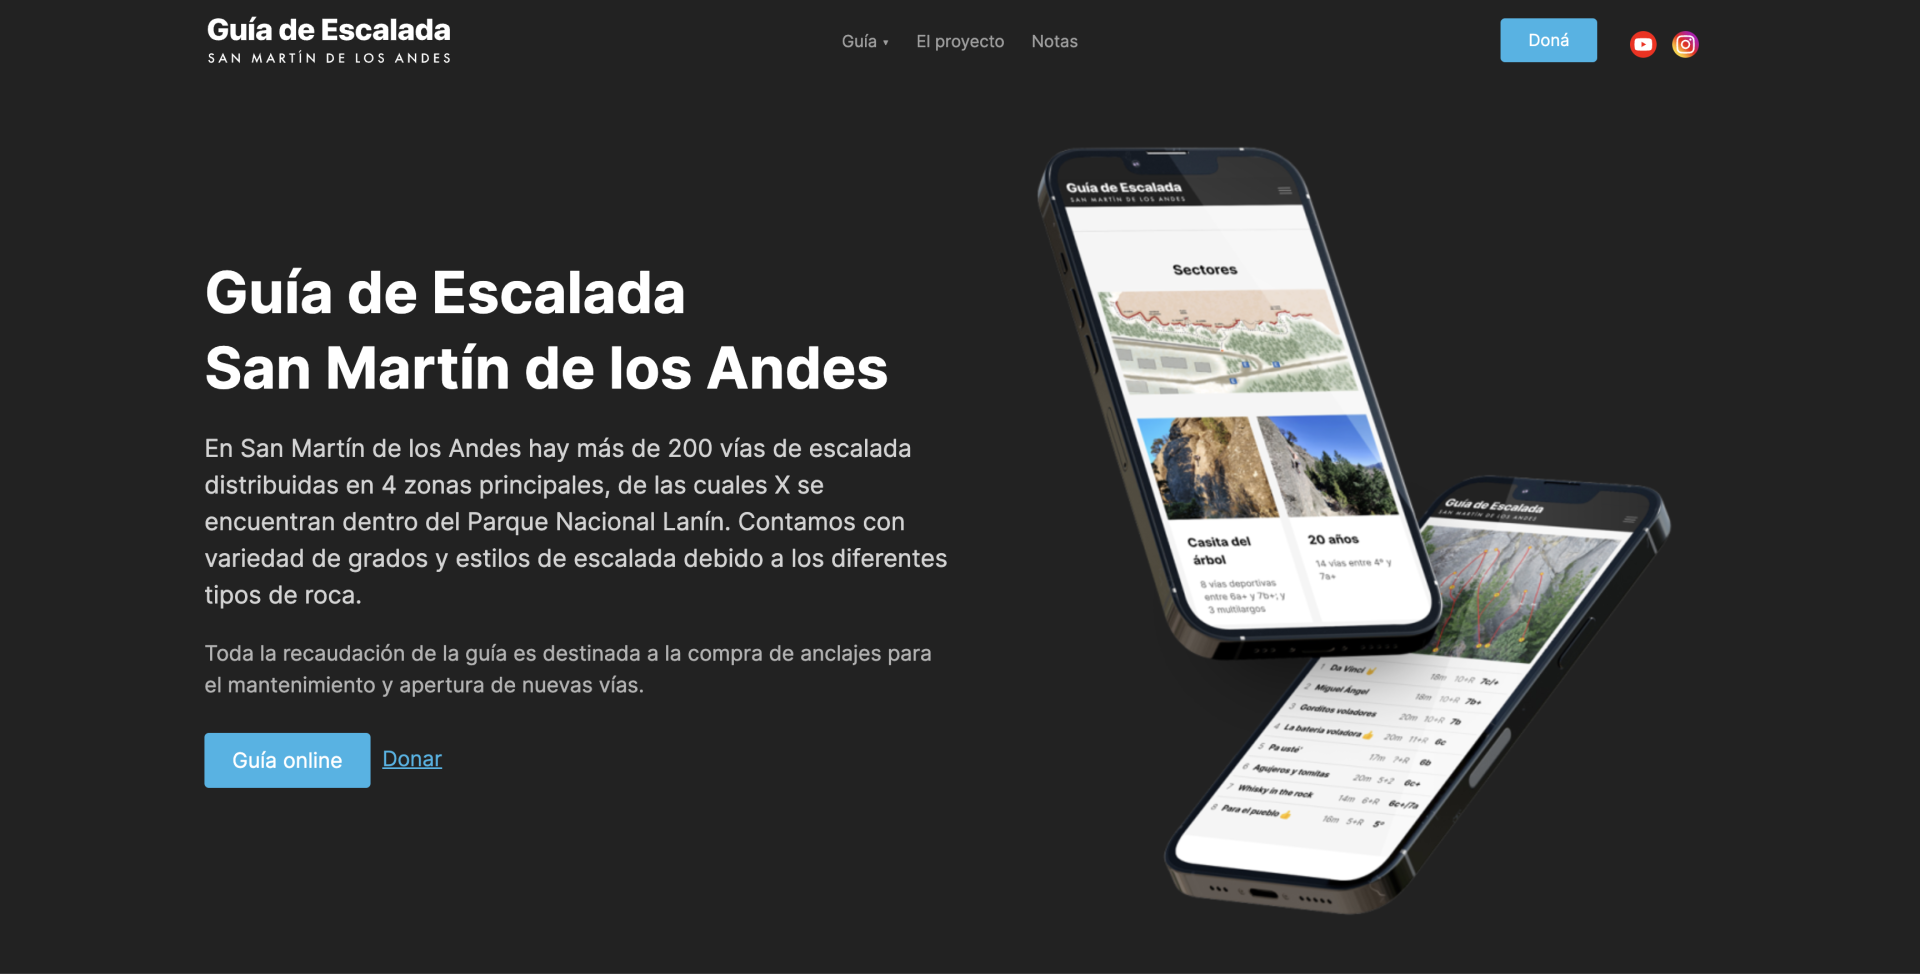 Lanzamiento de la Guía de Escalada San Martín de los Andes Online y nuevo programa de donaciones